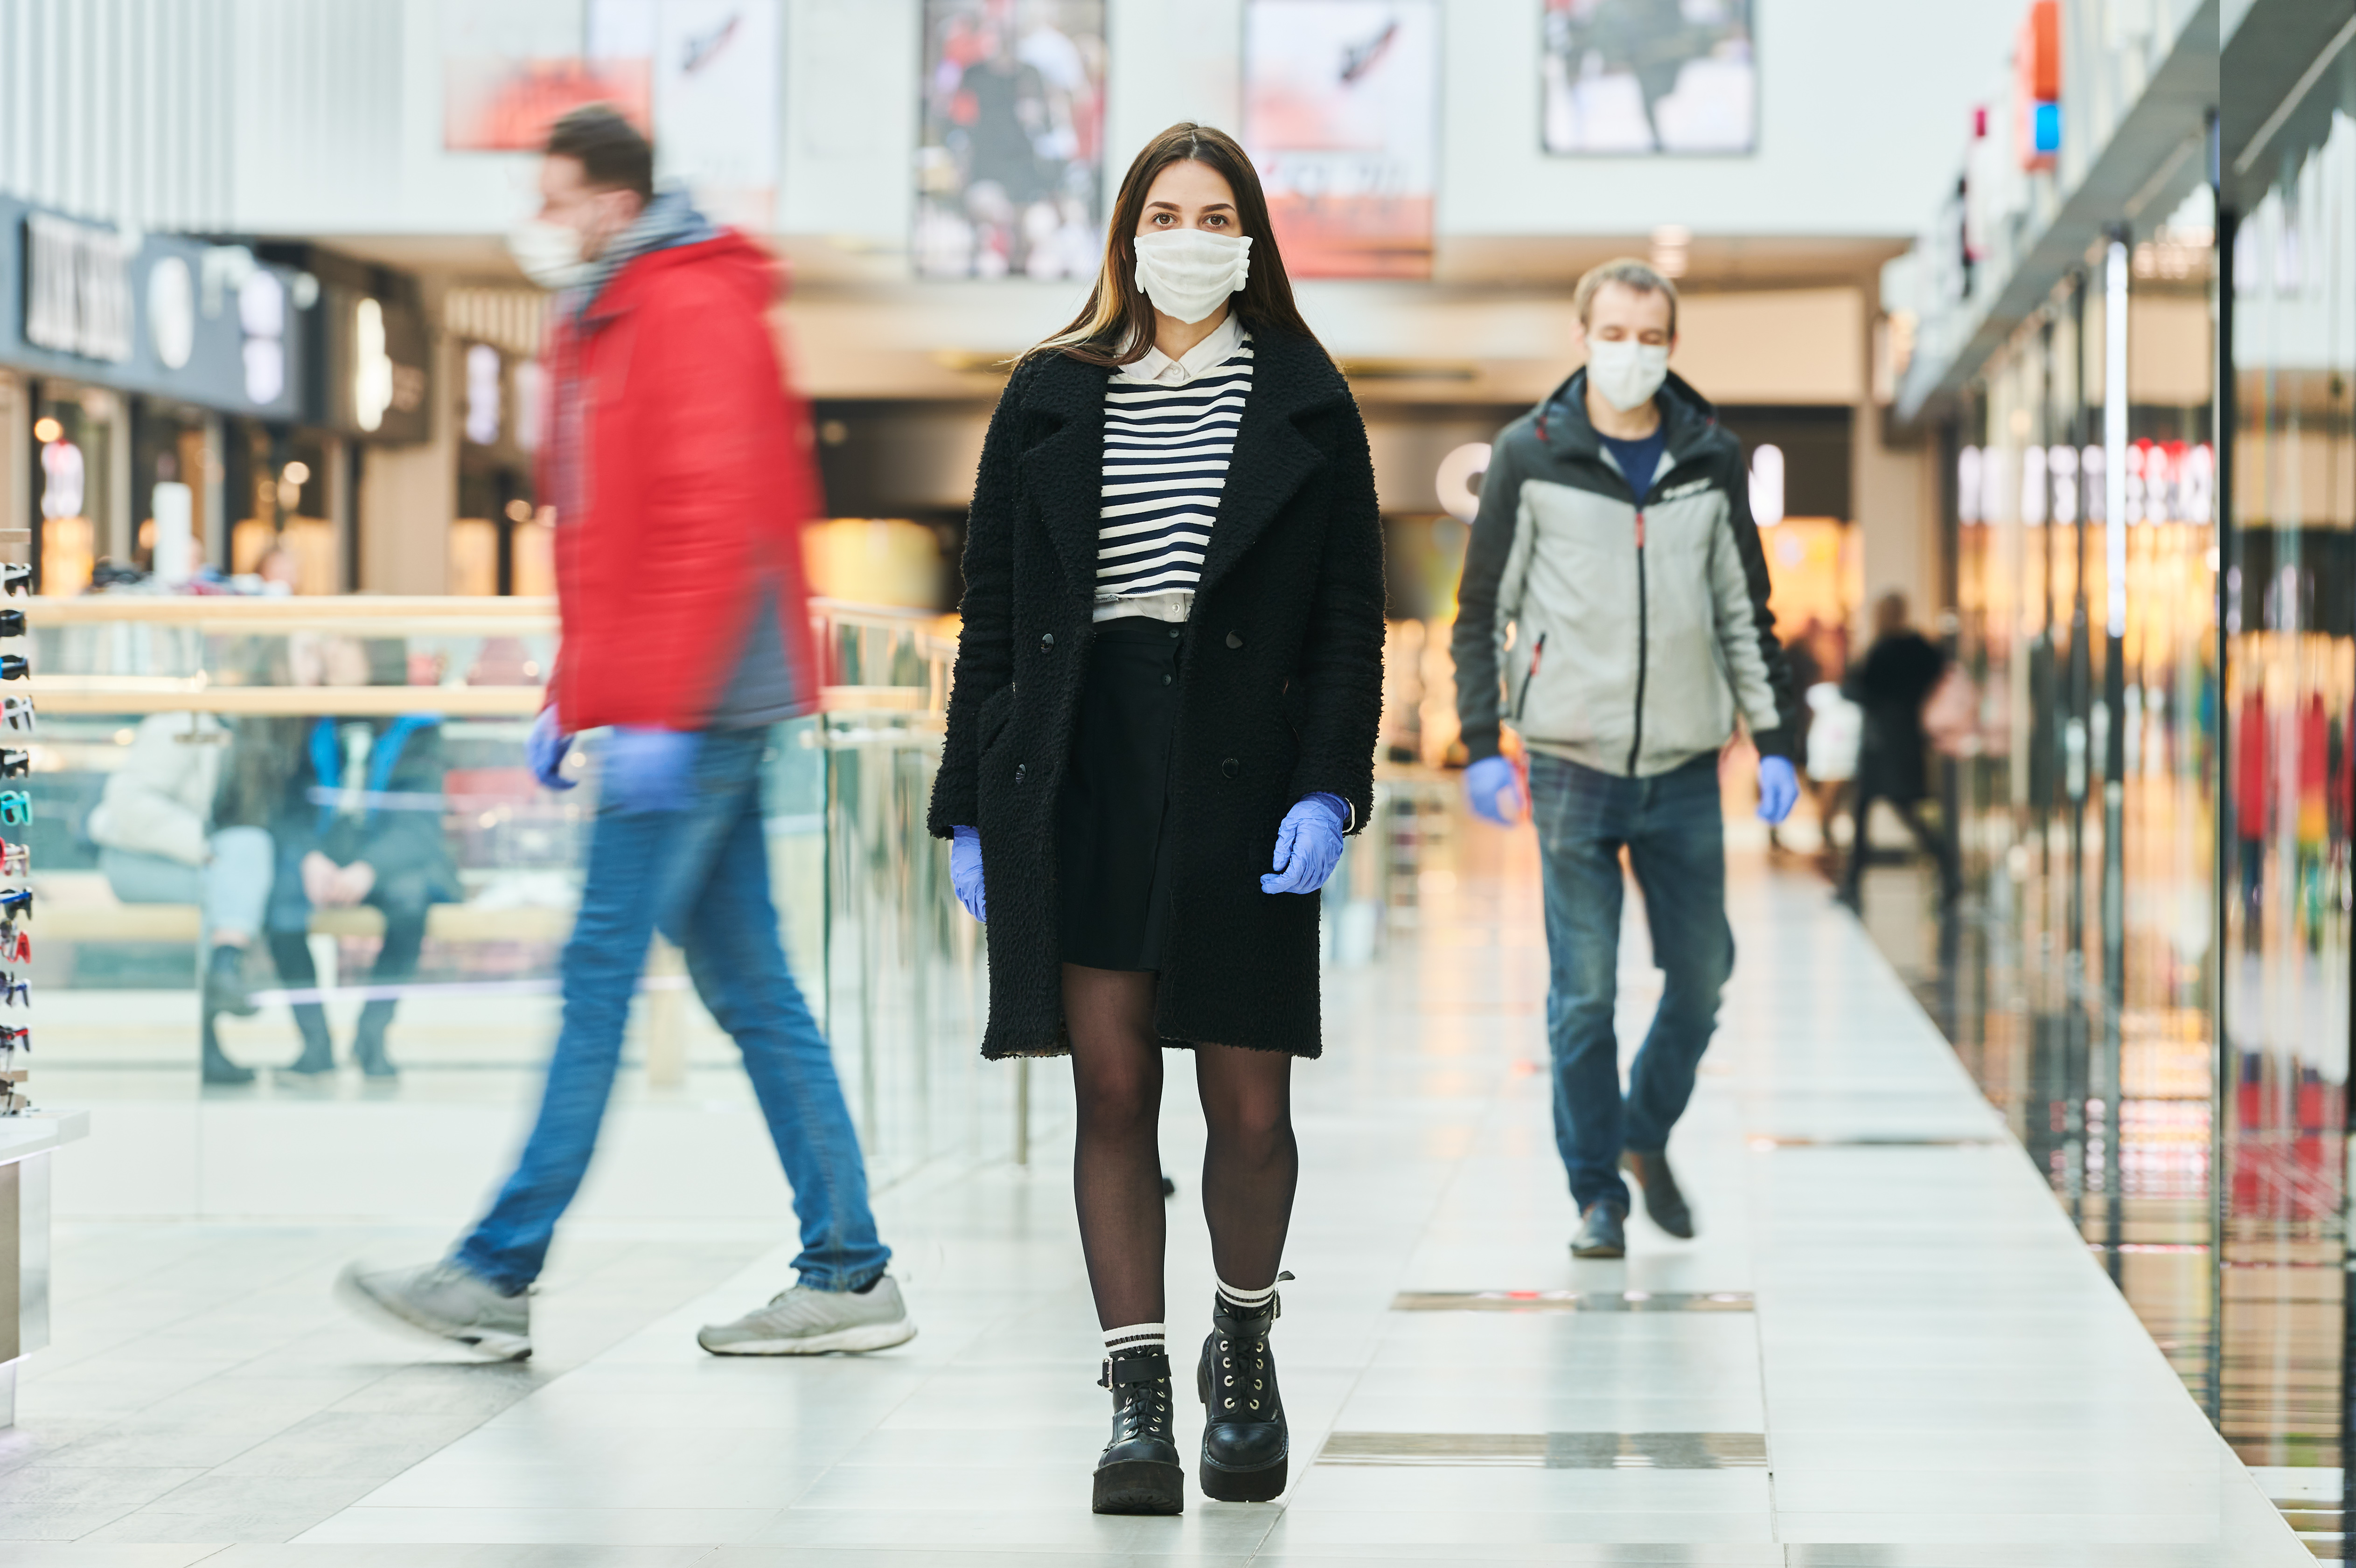 COVID-19 : le masque aurait permis d’éviter plus de 78.000 infections en Italie sur 1 mois de pic (6 avril au 9 mai) (Visuel AdobeStock_337839342)